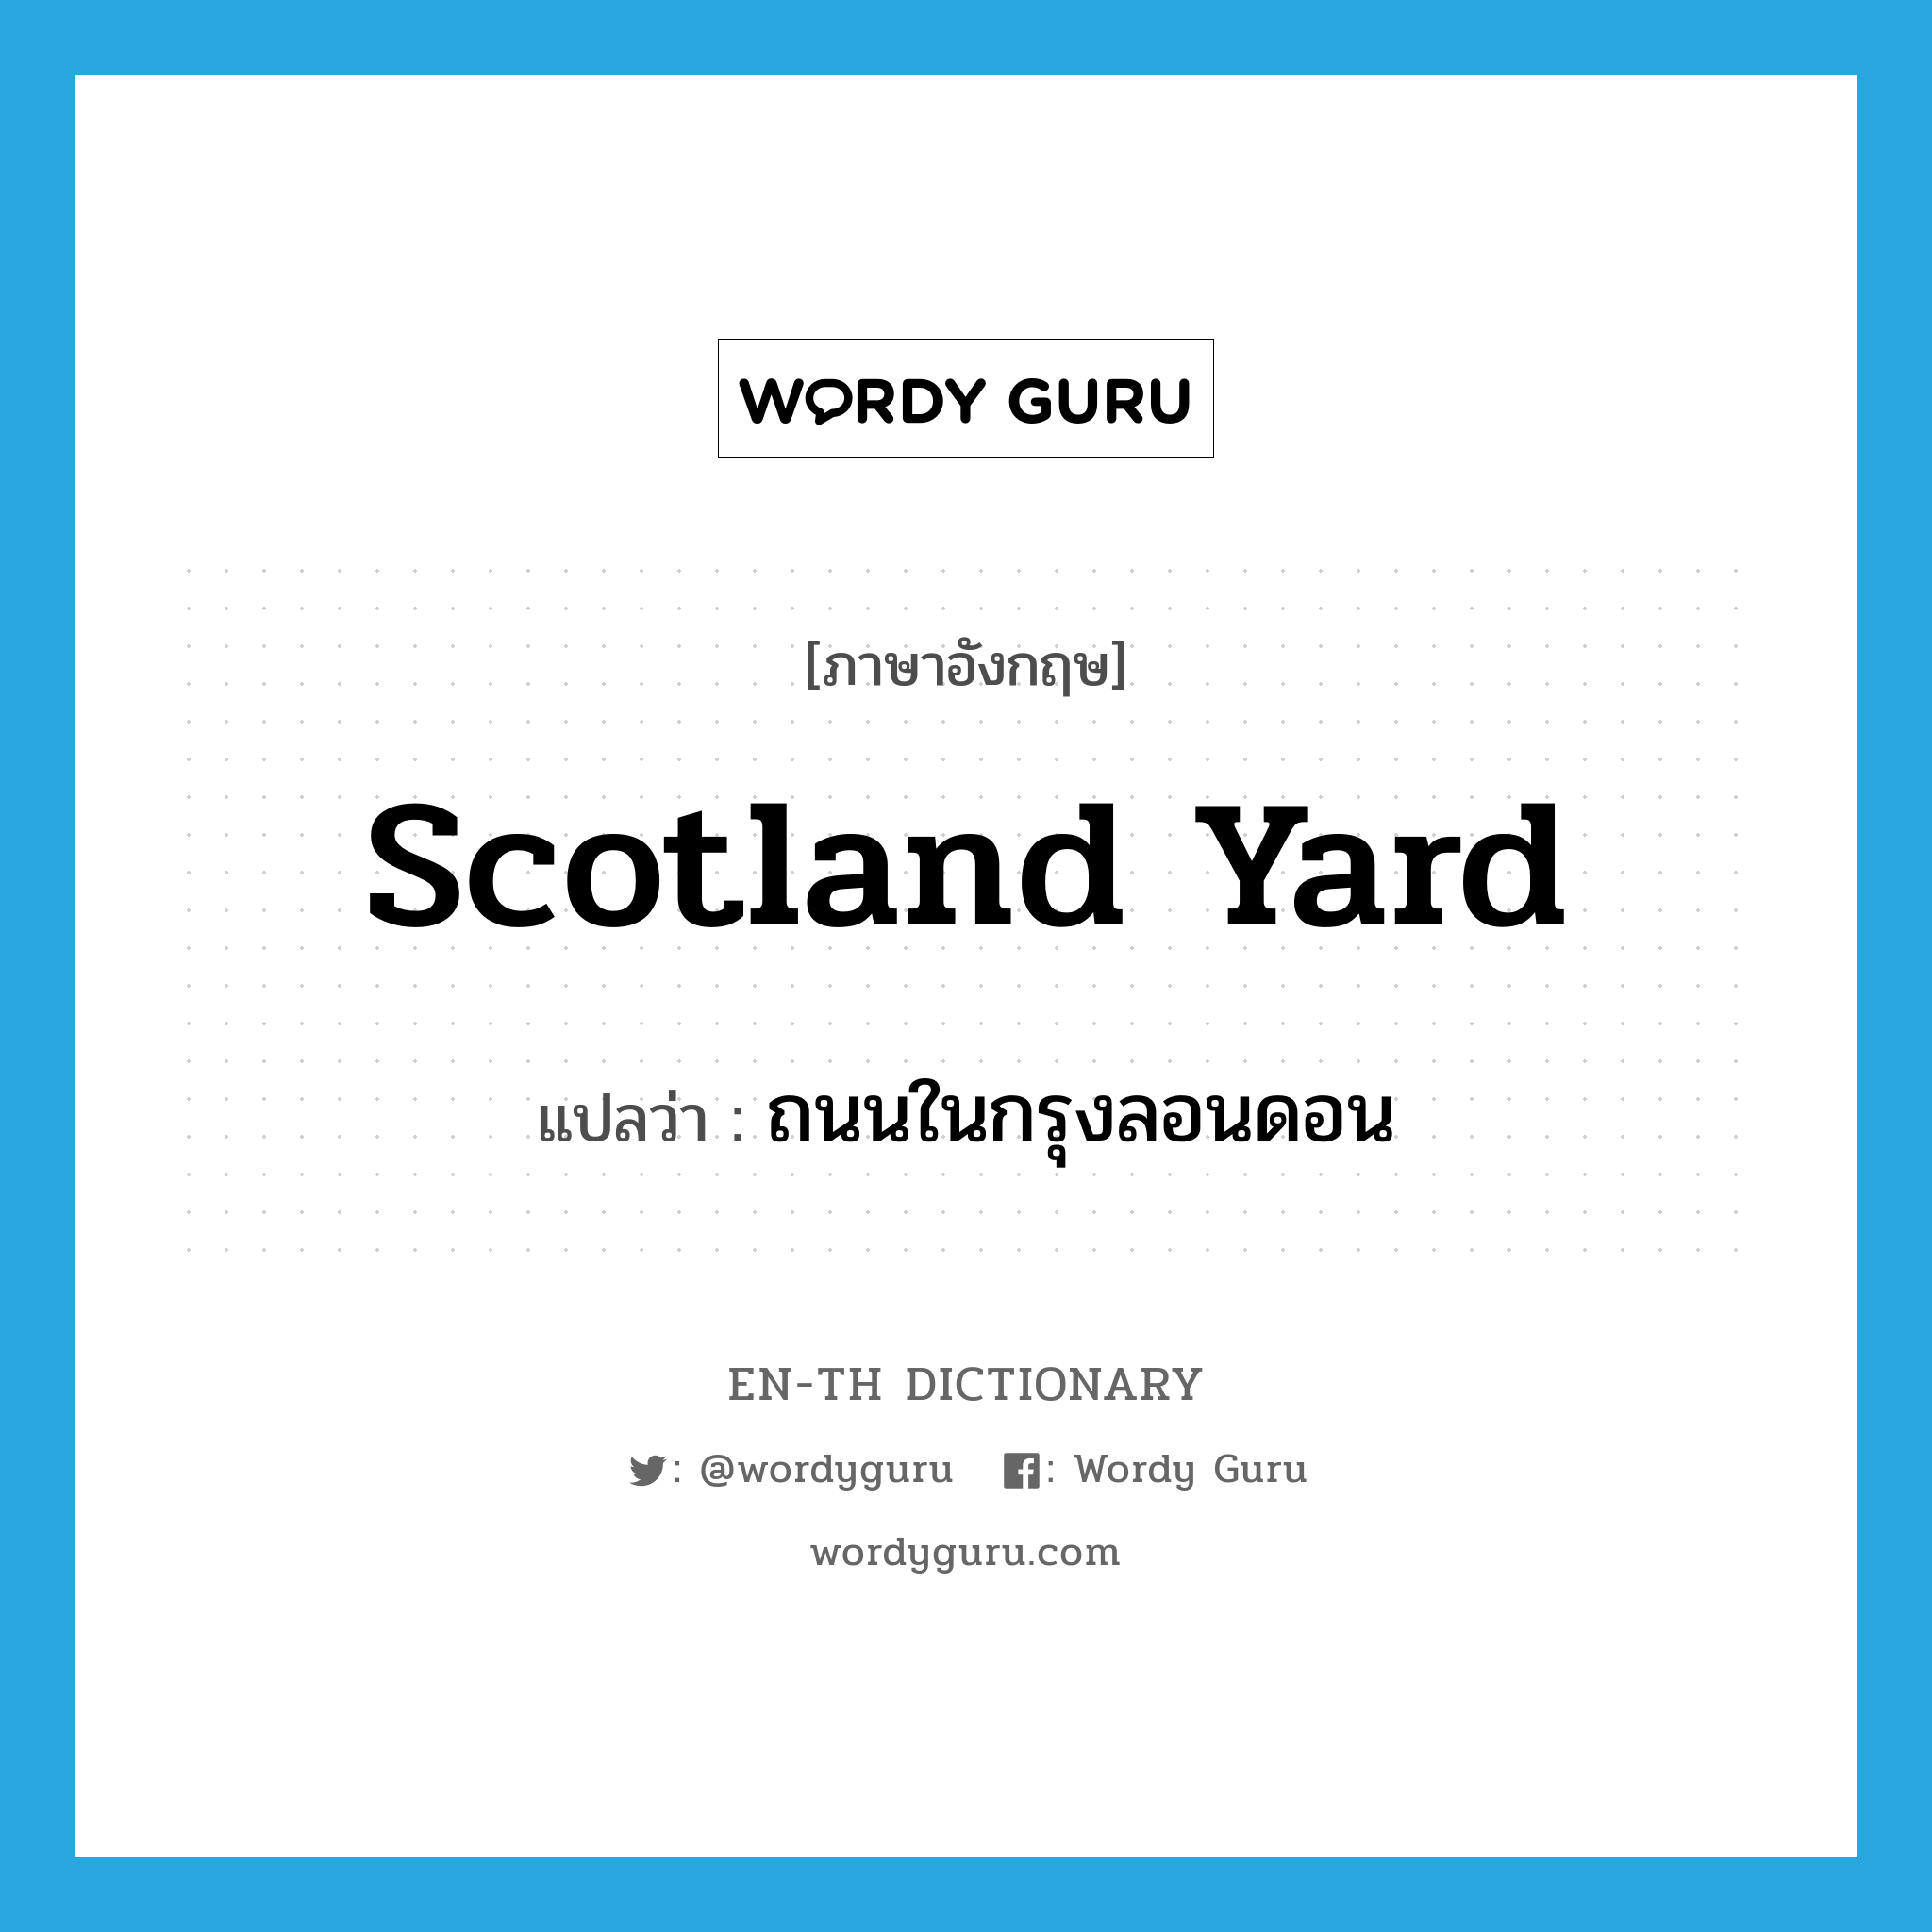 ถนนในกรุงลอนดอน ภาษาอังกฤษ?, คำศัพท์ภาษาอังกฤษ ถนนในกรุงลอนดอน แปลว่า Scotland Yard ประเภท N หมวด N